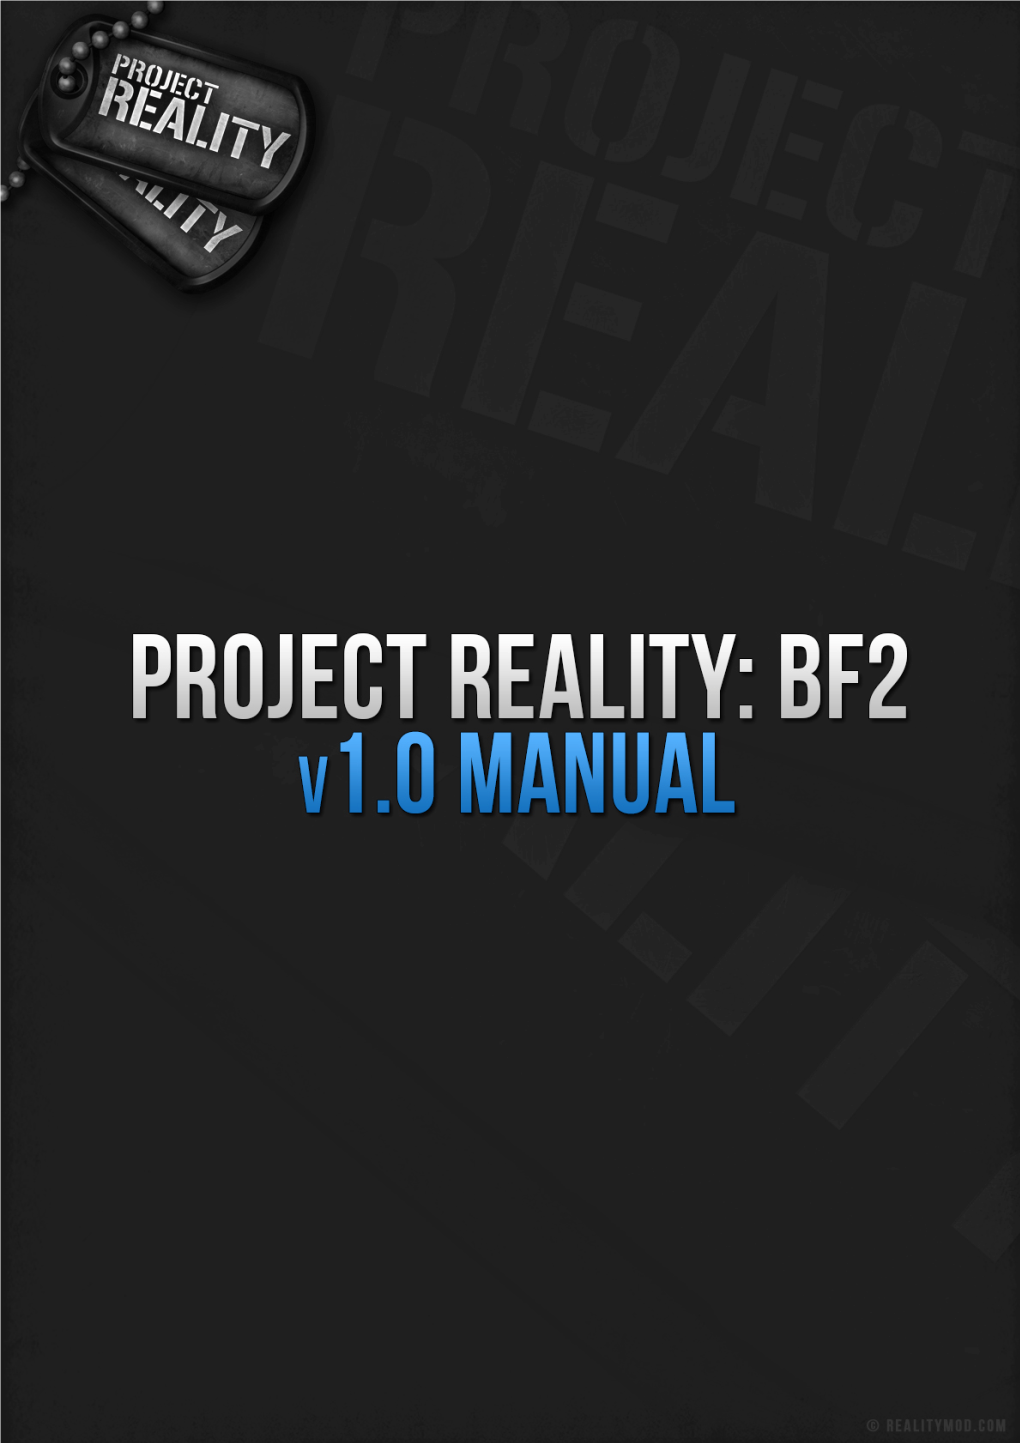 Project Reality Manual V1.0